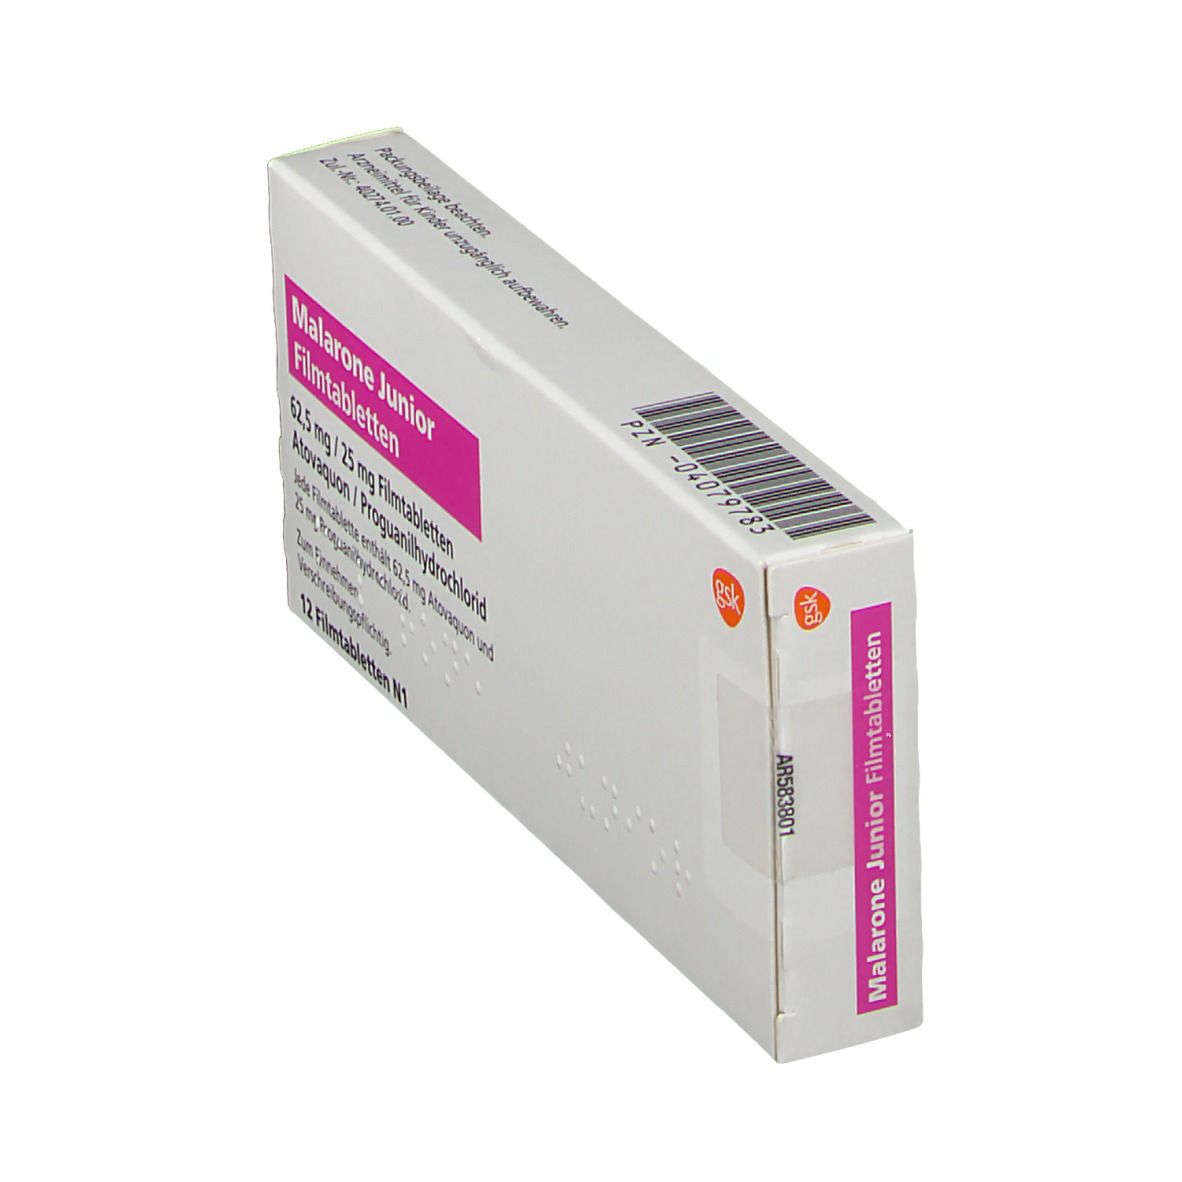 Malarone® Junior 62,5 mg/25 mg